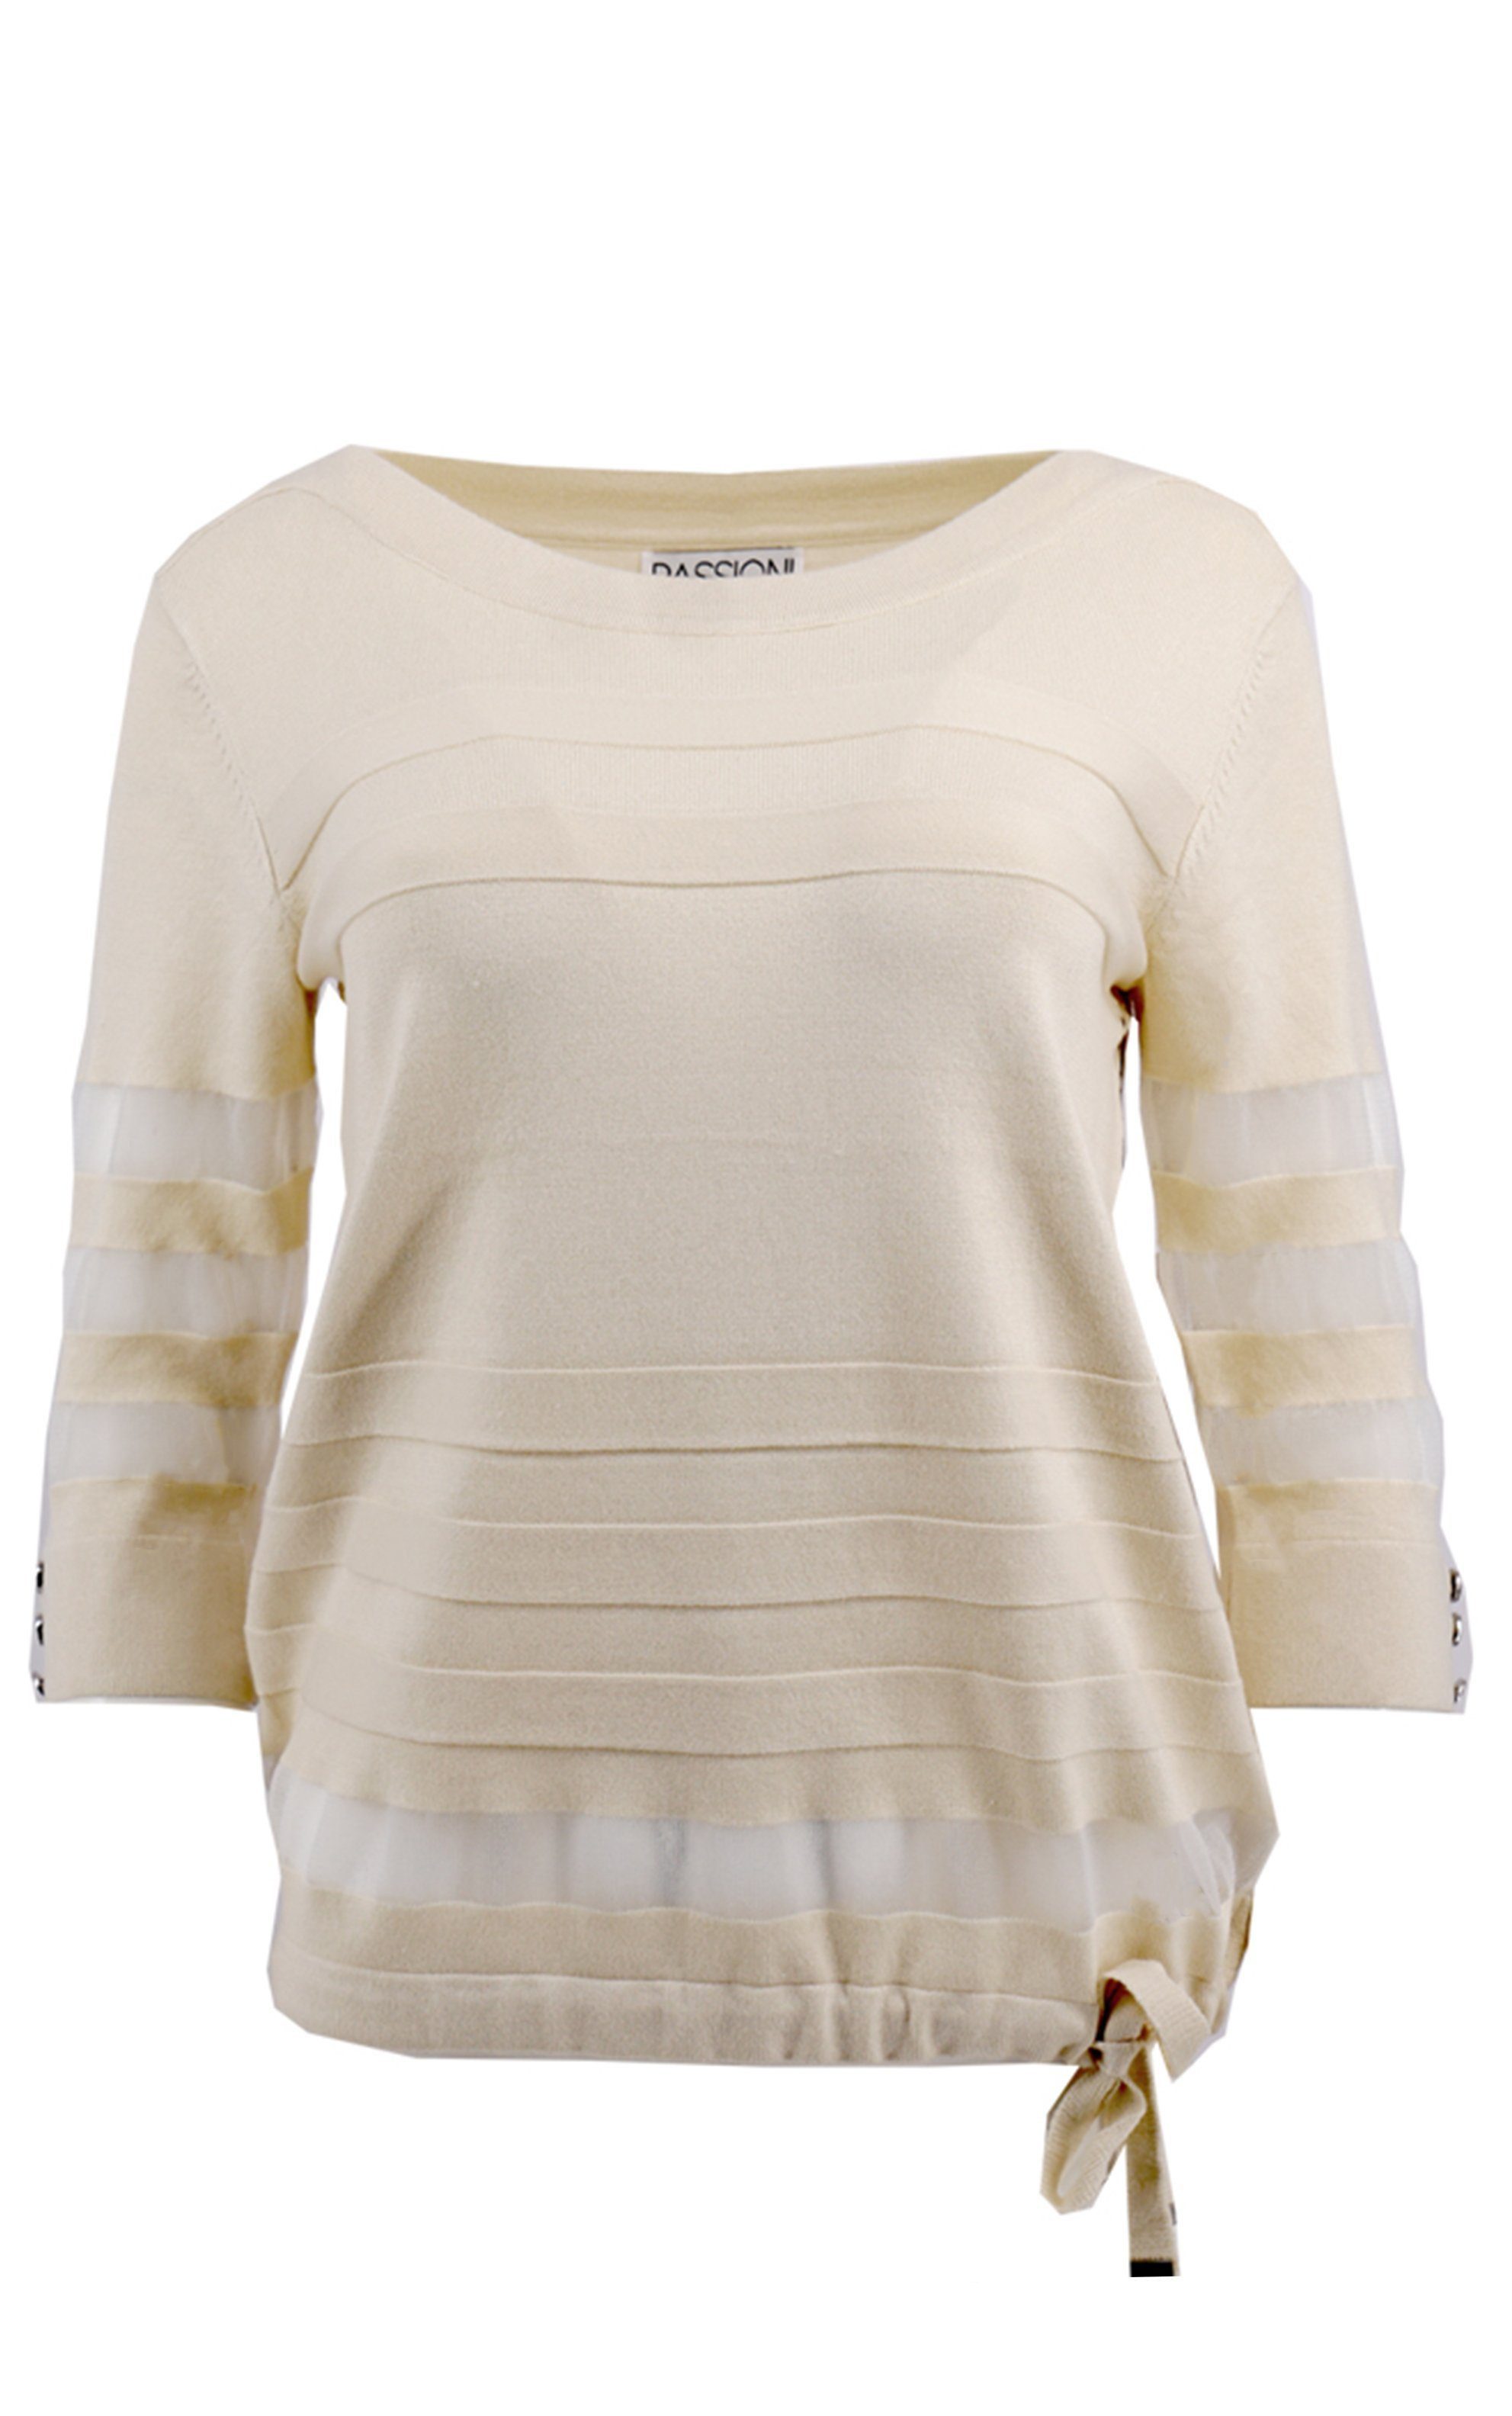 Passioni 3/4 Arm-Pullover Pullover in Beige mit 3/4 rmeln und transparenten Streifendetails transparente Streifen-passioni 1